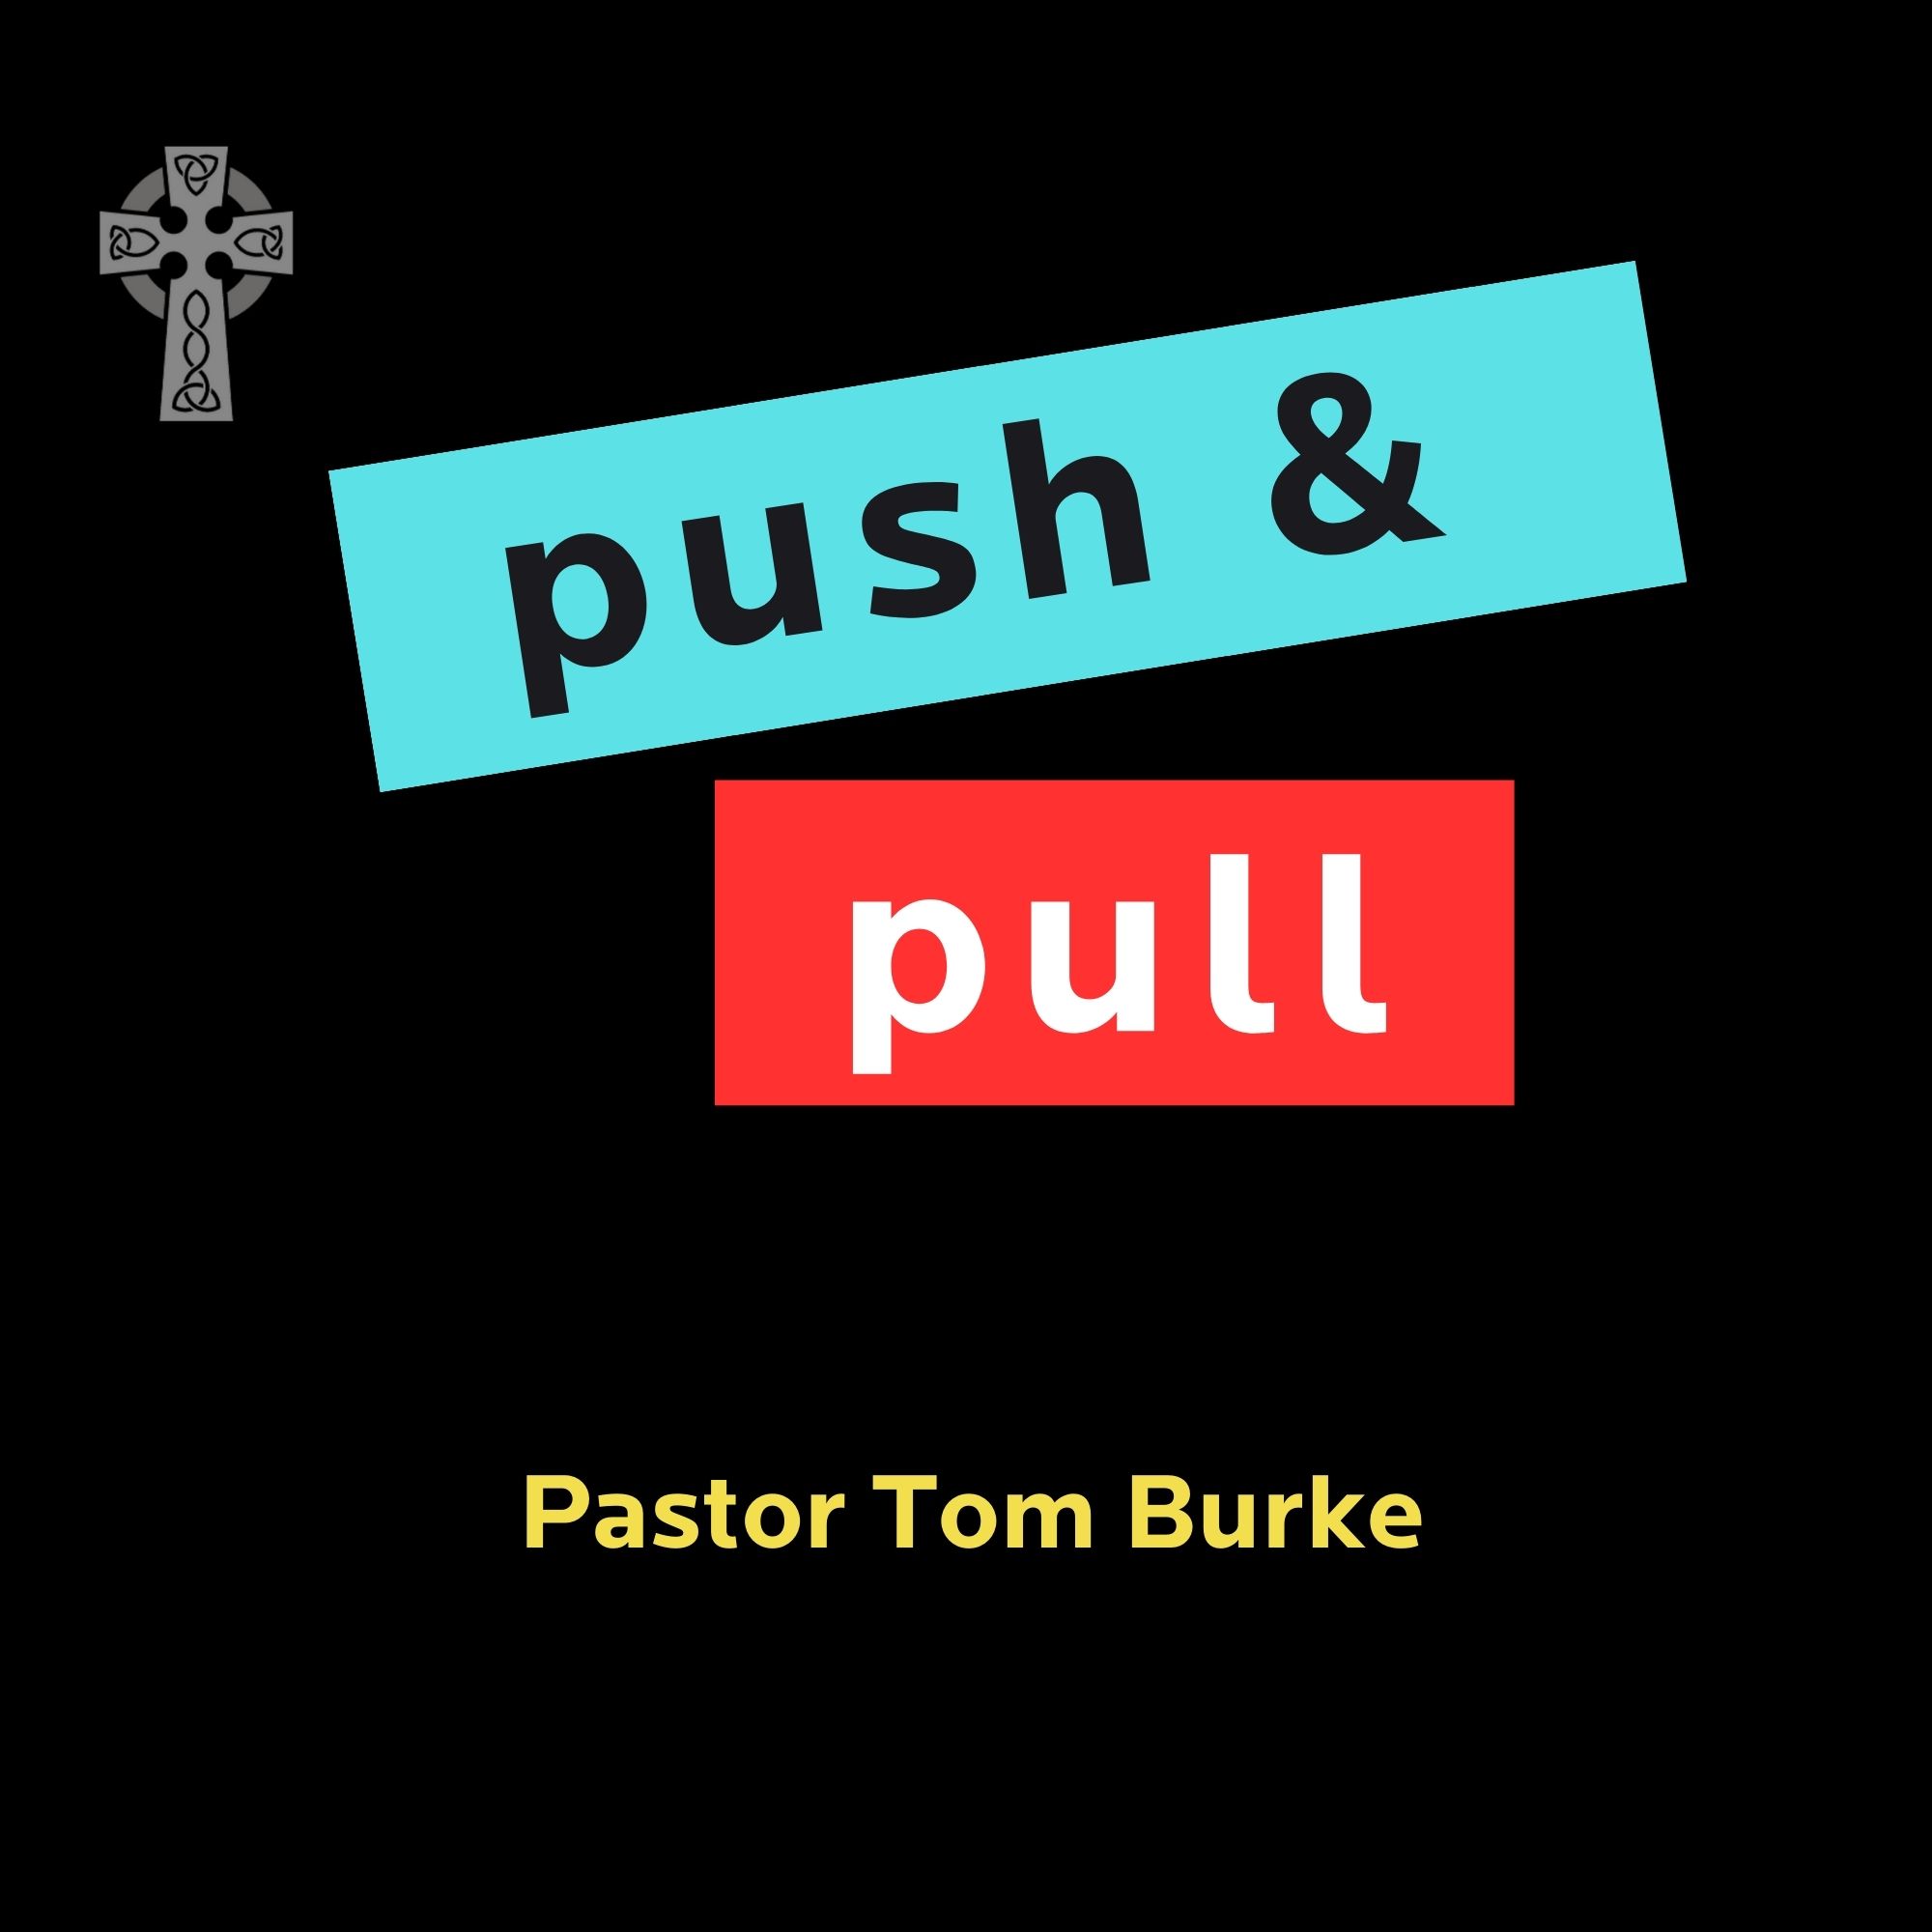 Push & Pull - Pastor Tom Burke